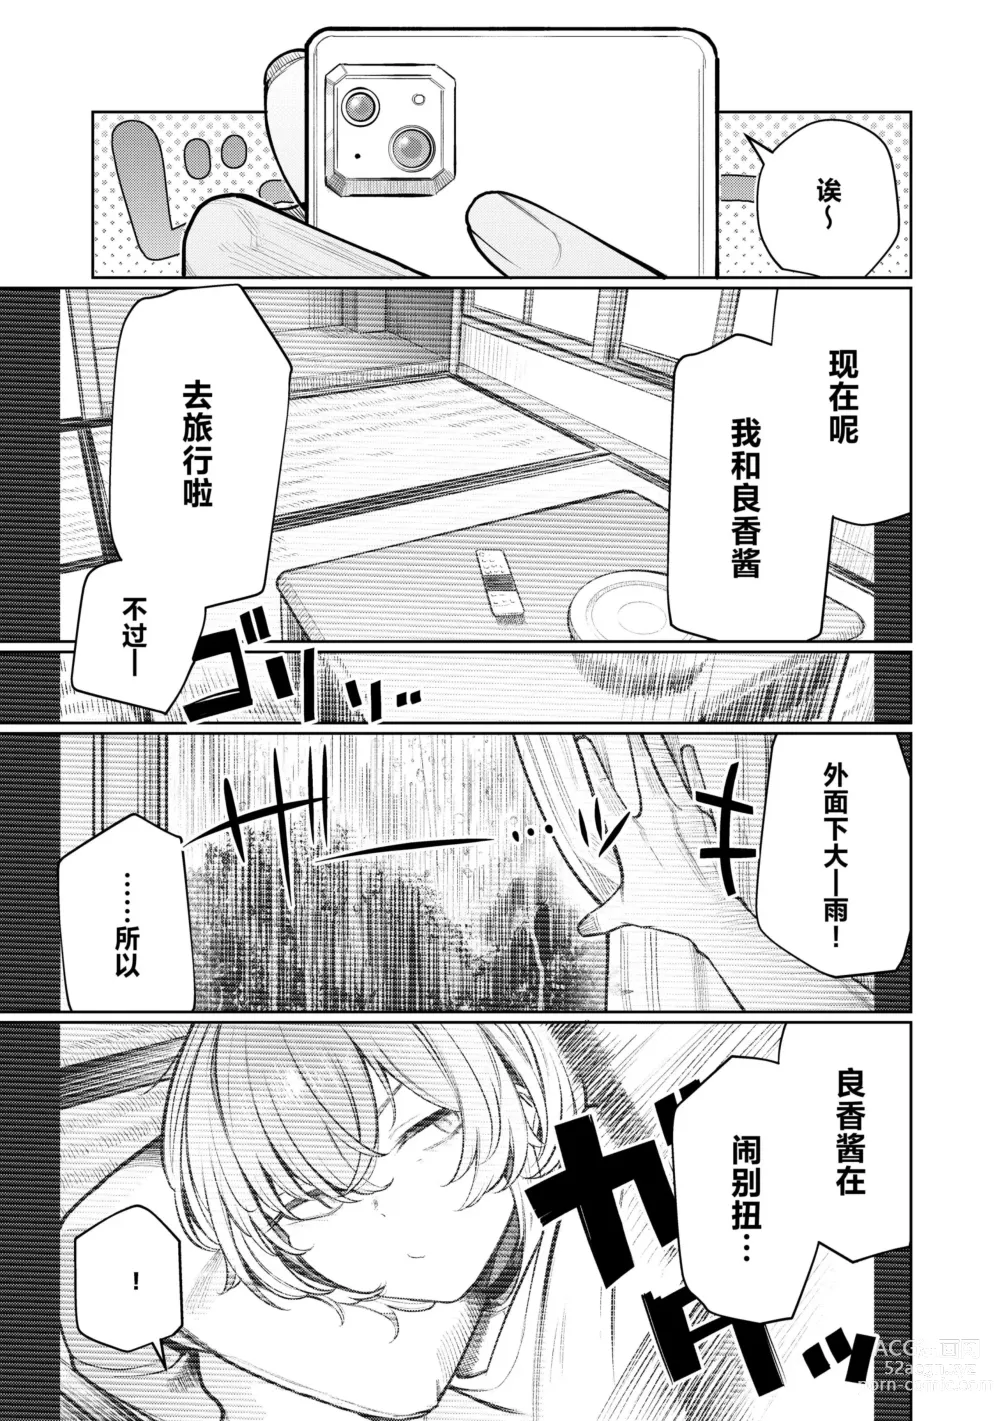 Page 5 of doujinshi Furyouppoi Kanojo to Daradara Hamedori Shitai.